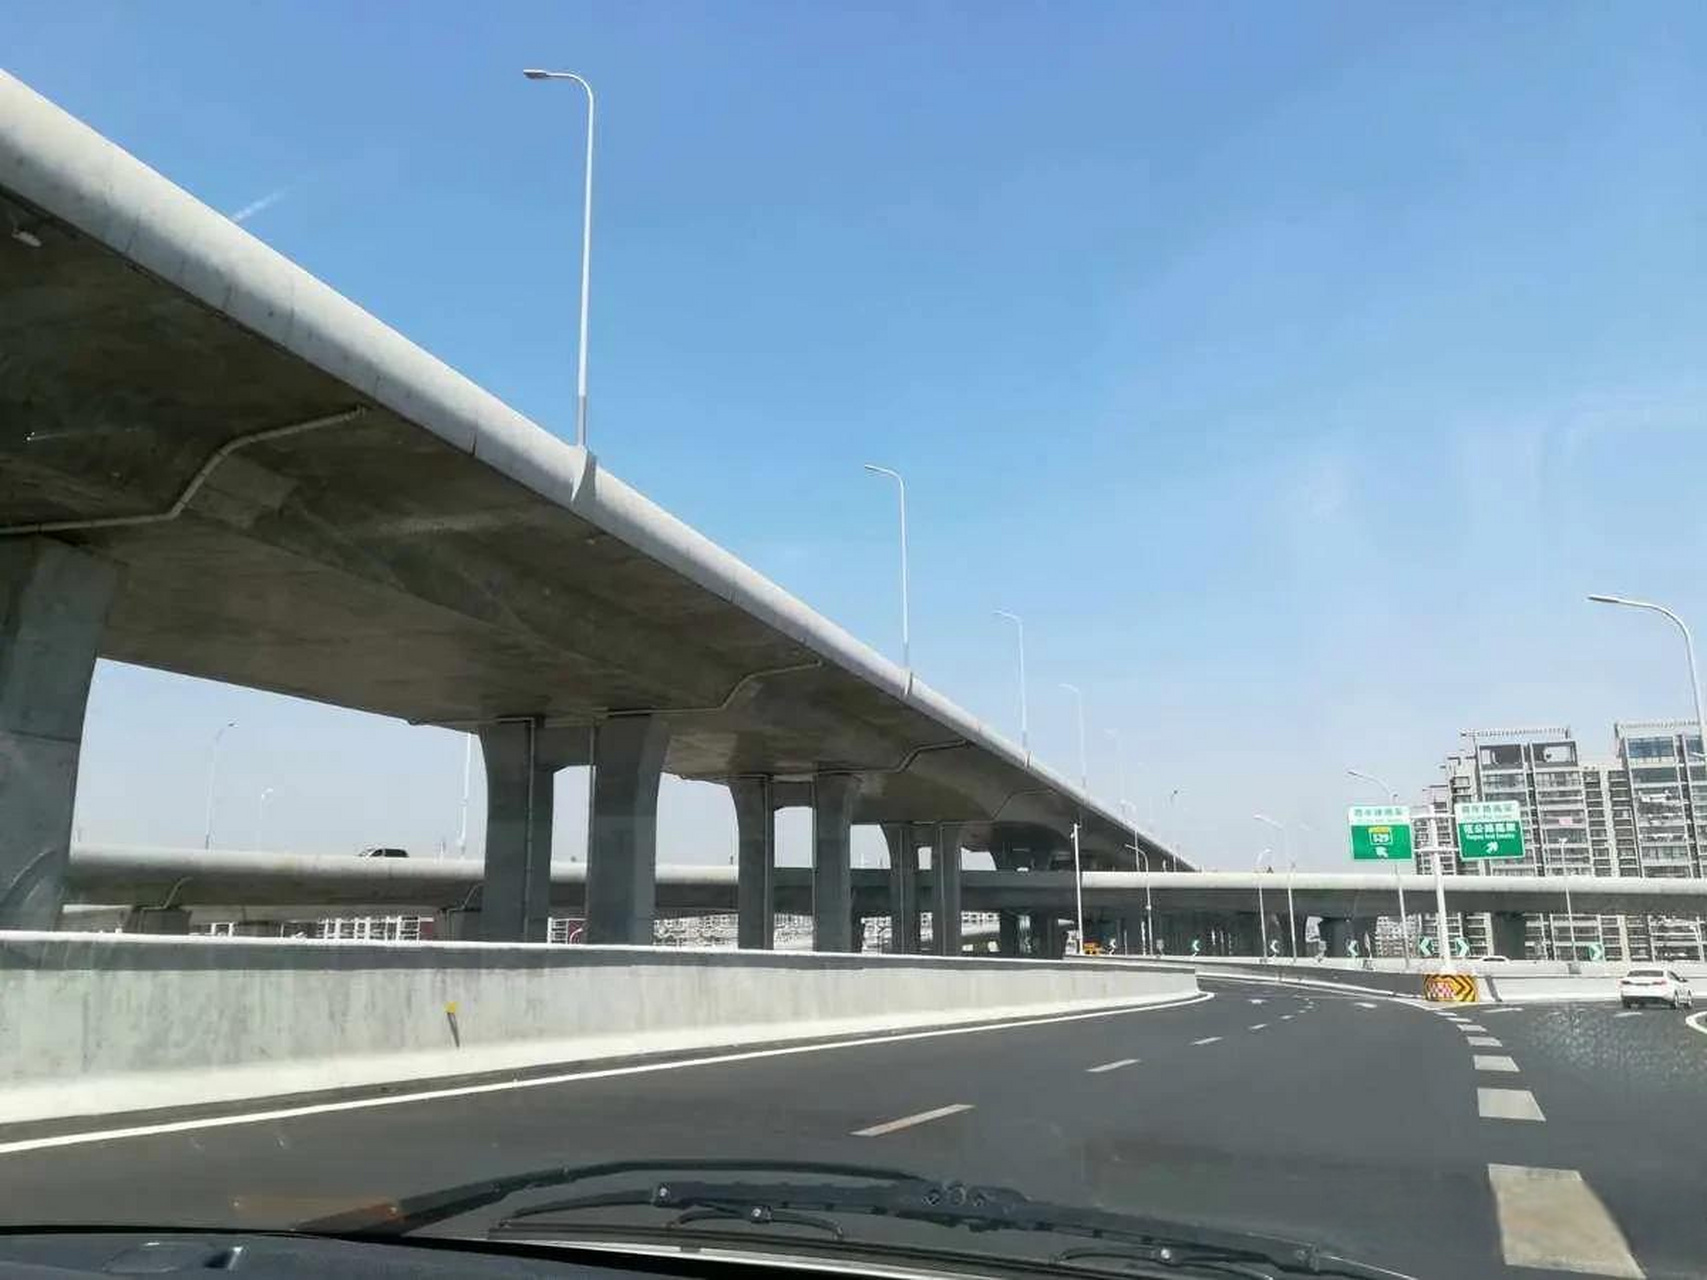 其中,高架桥内环快速路的建设是连云港市交通建设的重点项目之一